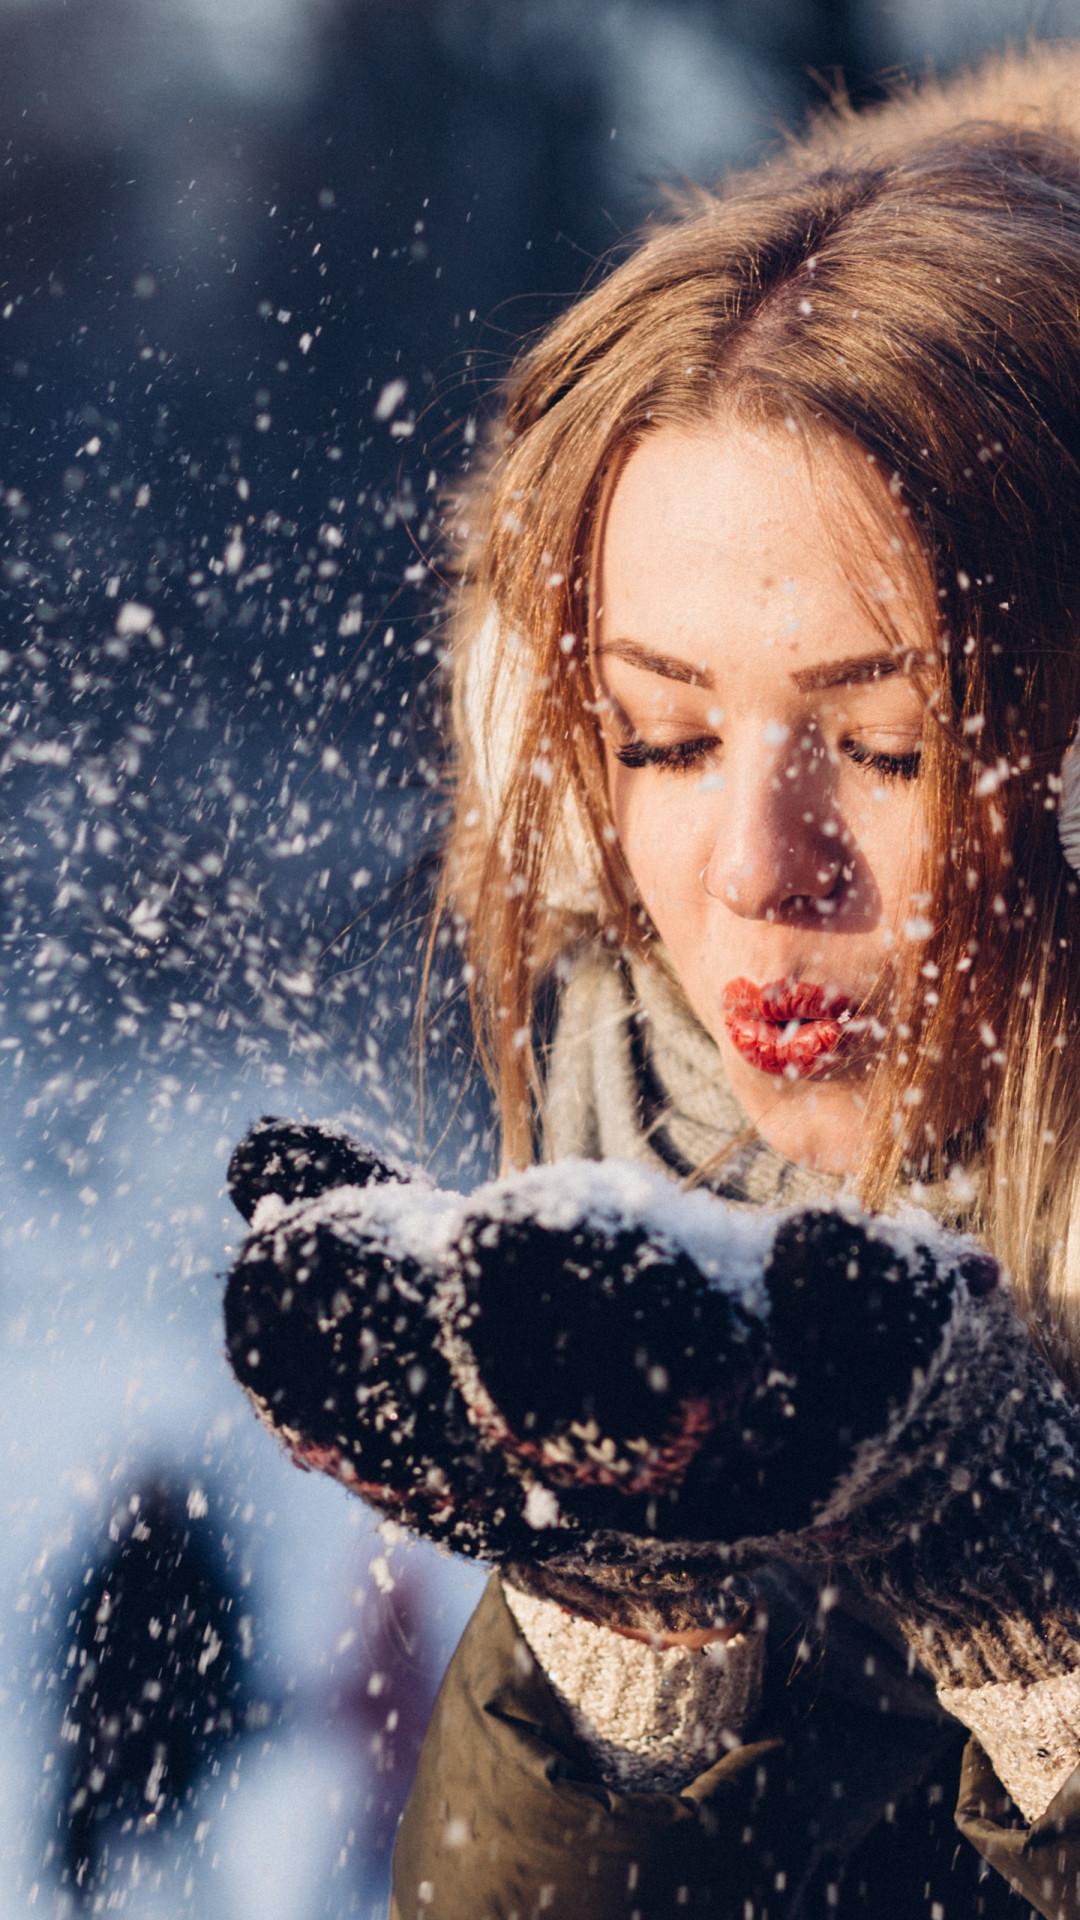 Download wallpaper: Beautiful girl in Winter landscape 1080x1920